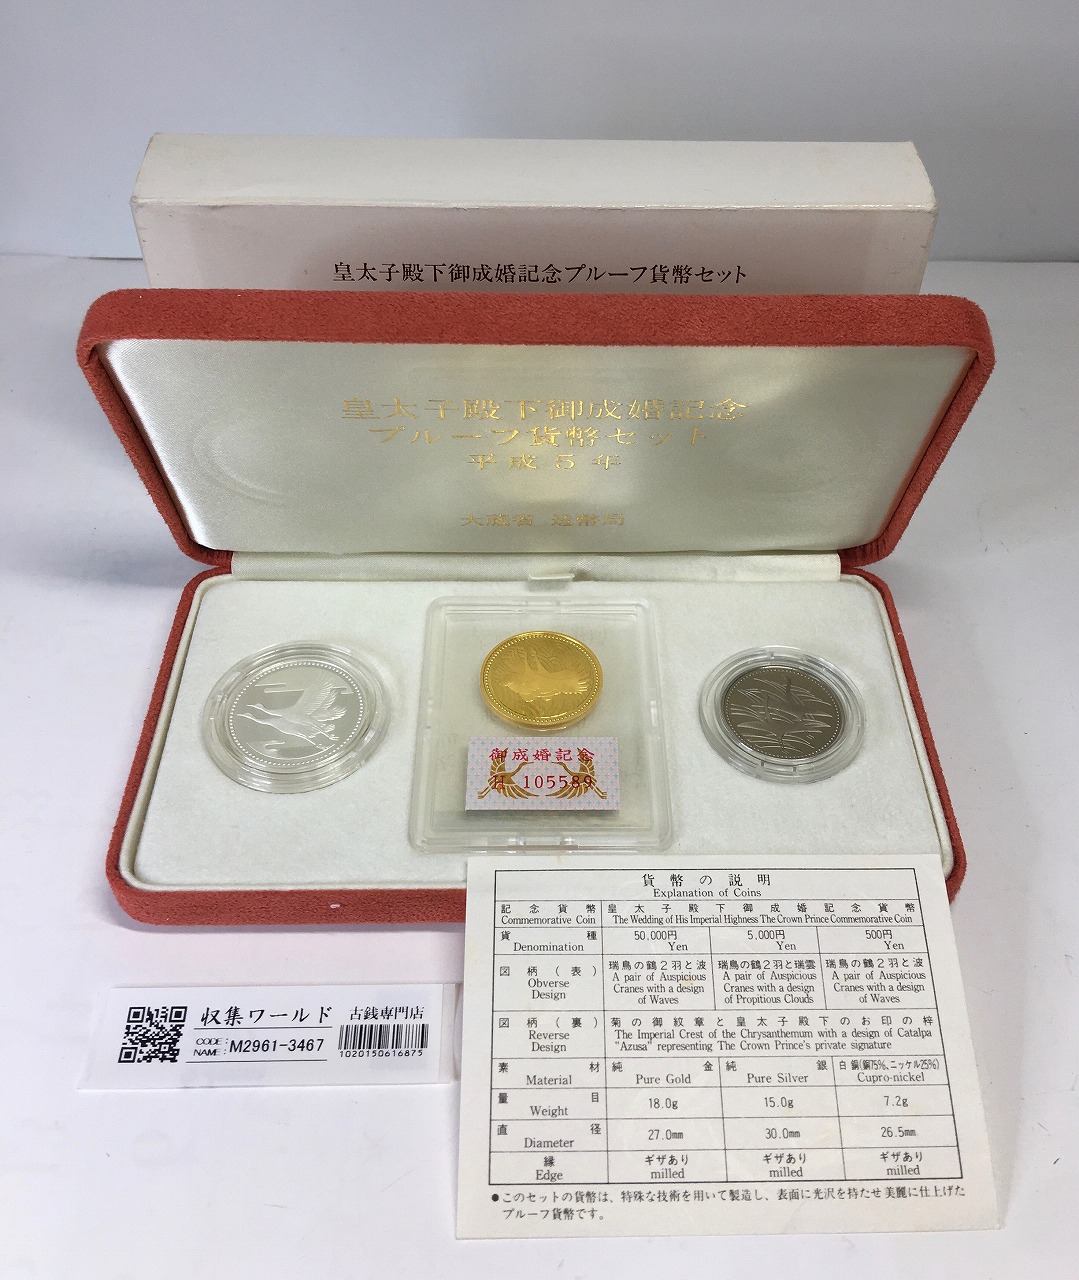 皇太子殿下御成婚記念 プルーフ貨幣セット/金銀銅貨 3枚セット/平成5年 